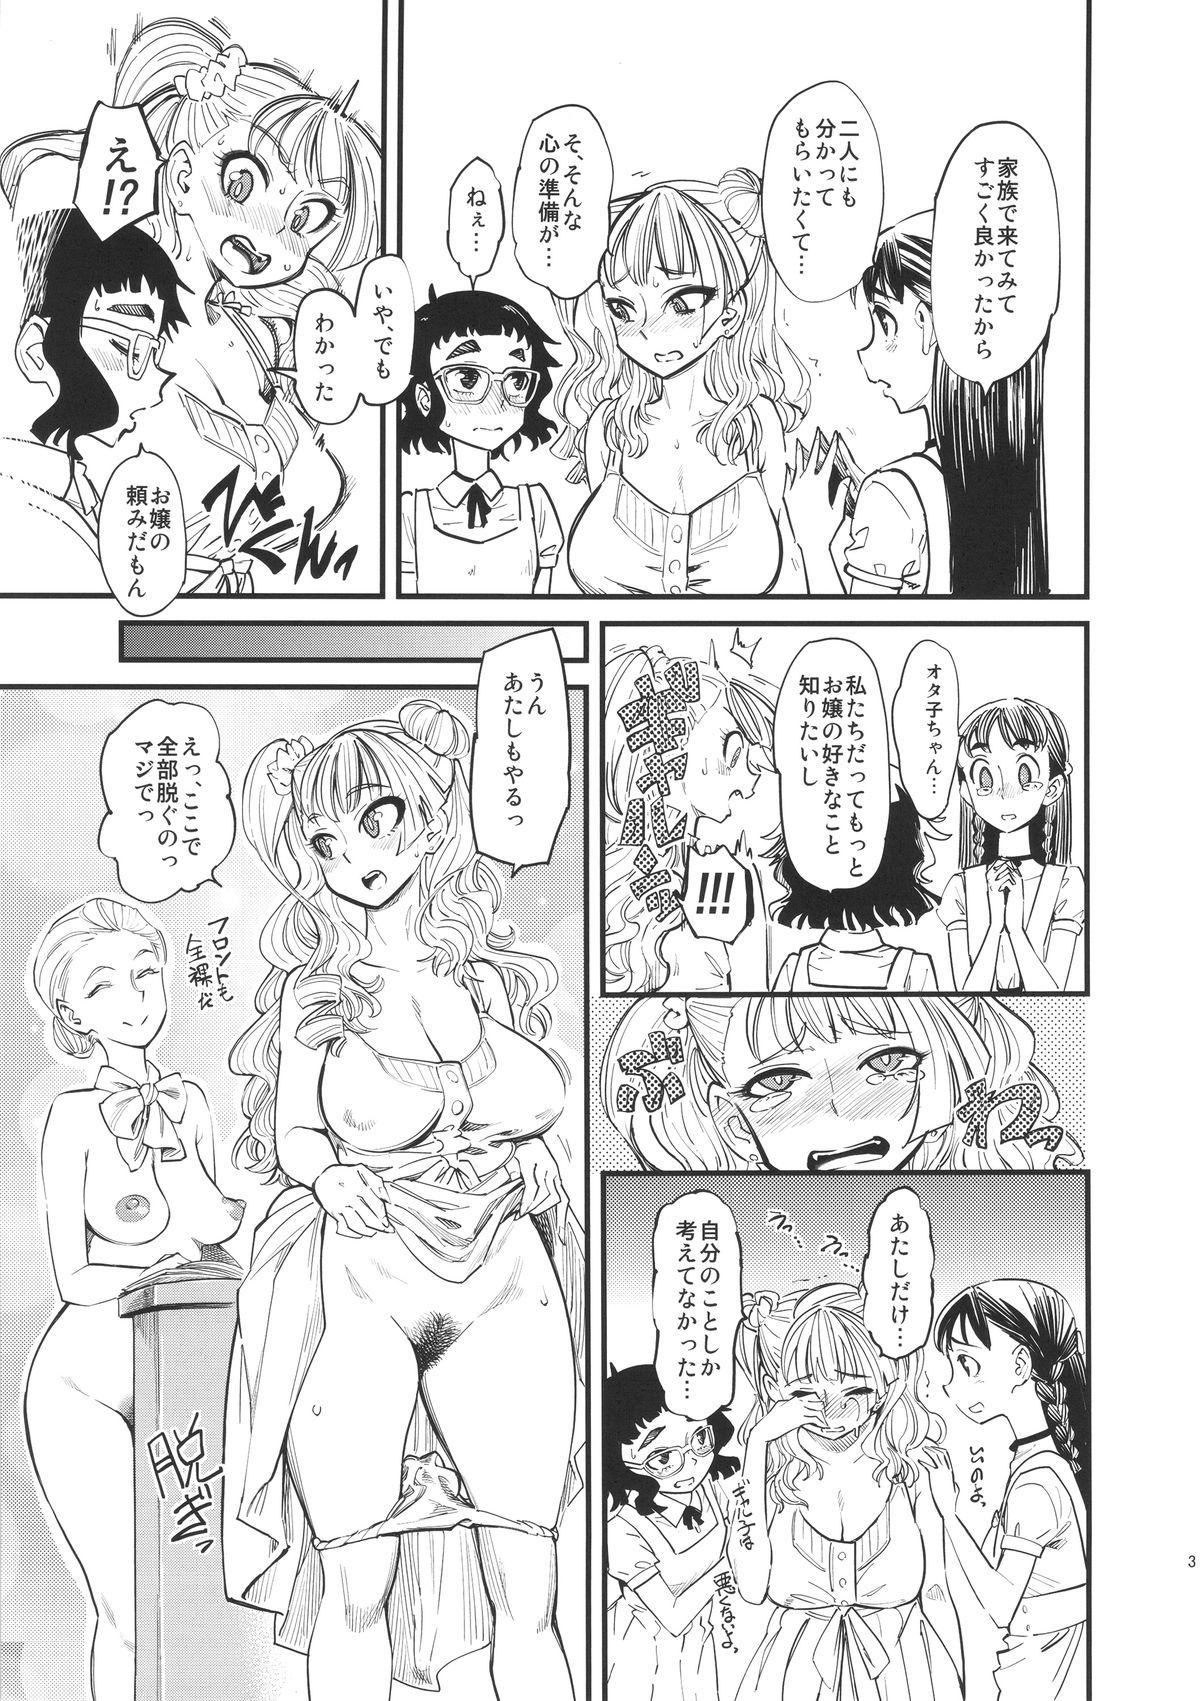 Jizz NMB - Oshiete galko chan Punk - Page 4